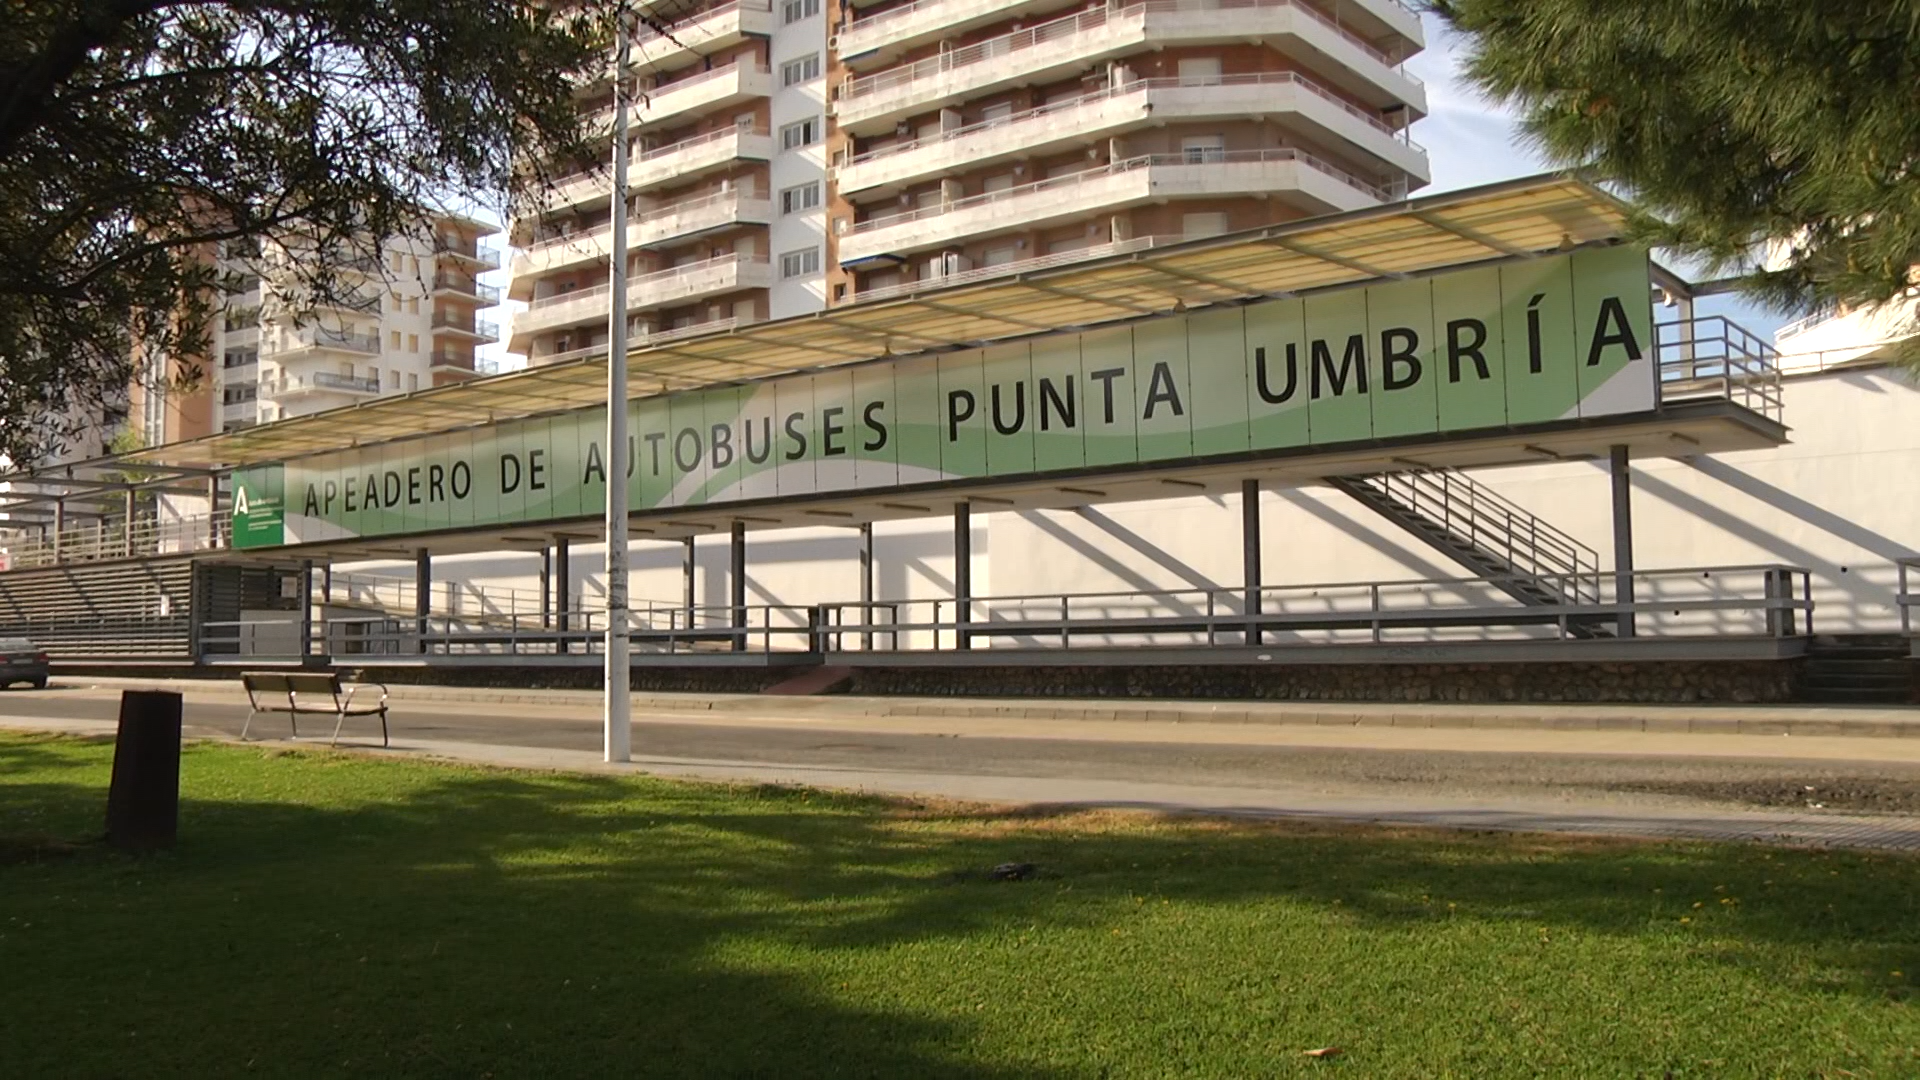 El apeadero de autobuses de Punta Umbría estrena nueva imagen